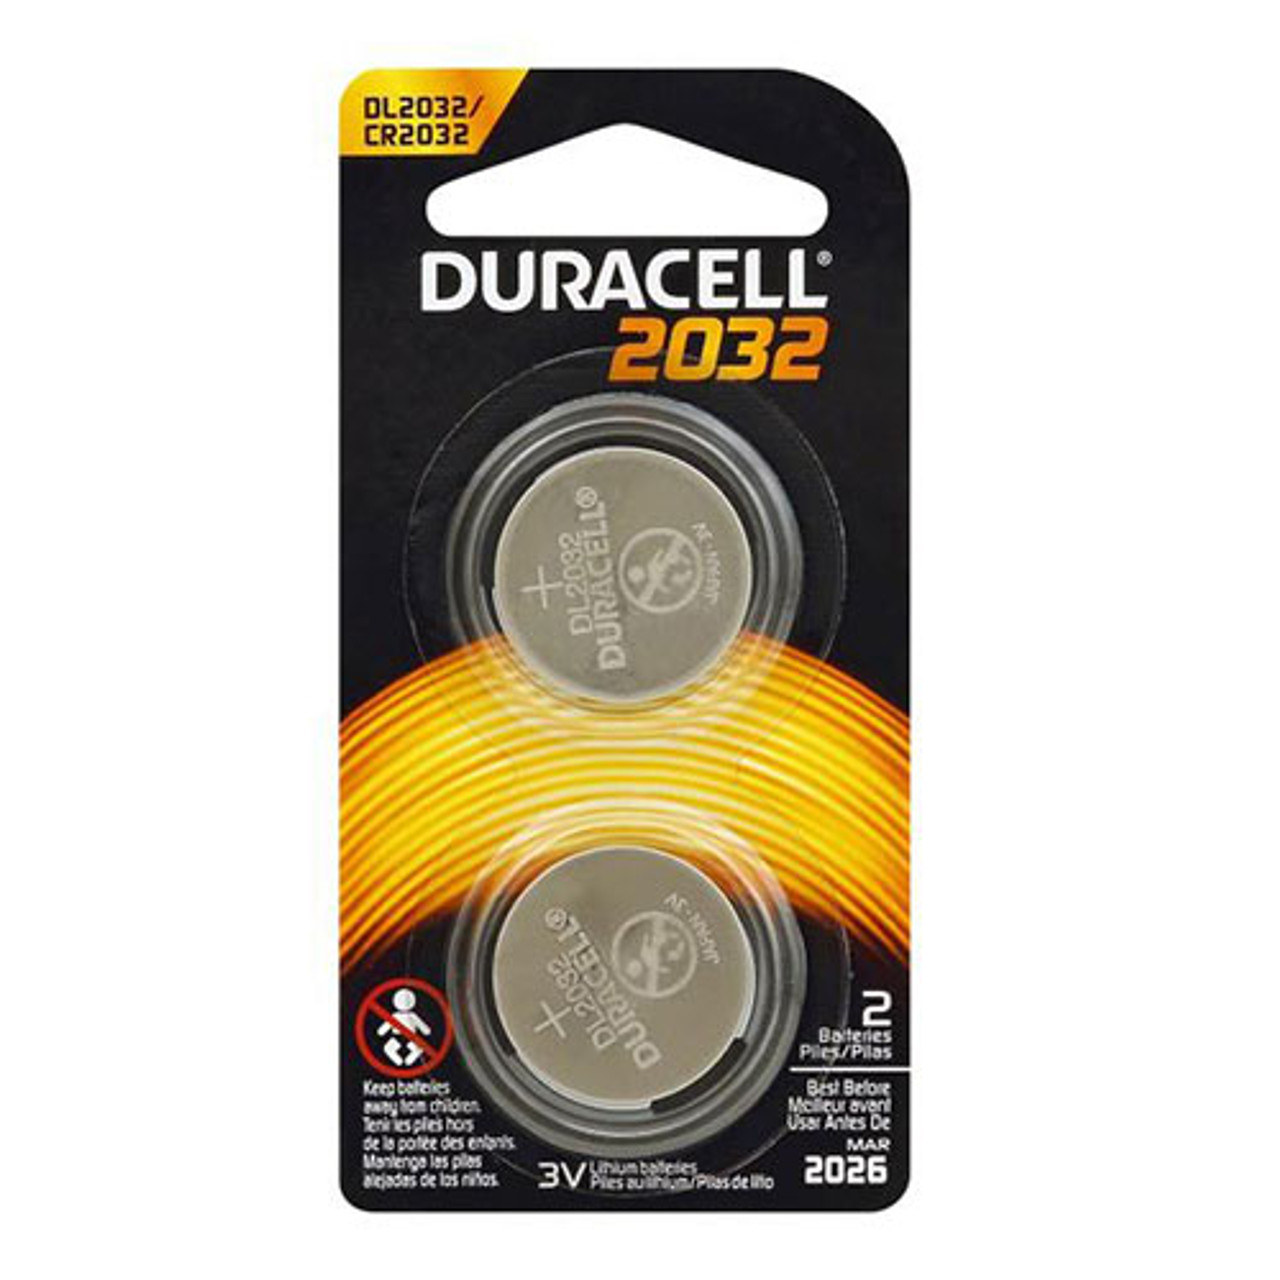 Duracell Elektro 2032 Pile bouton CR 2032 lithium 220 mAh 3 V 4 pc(s)